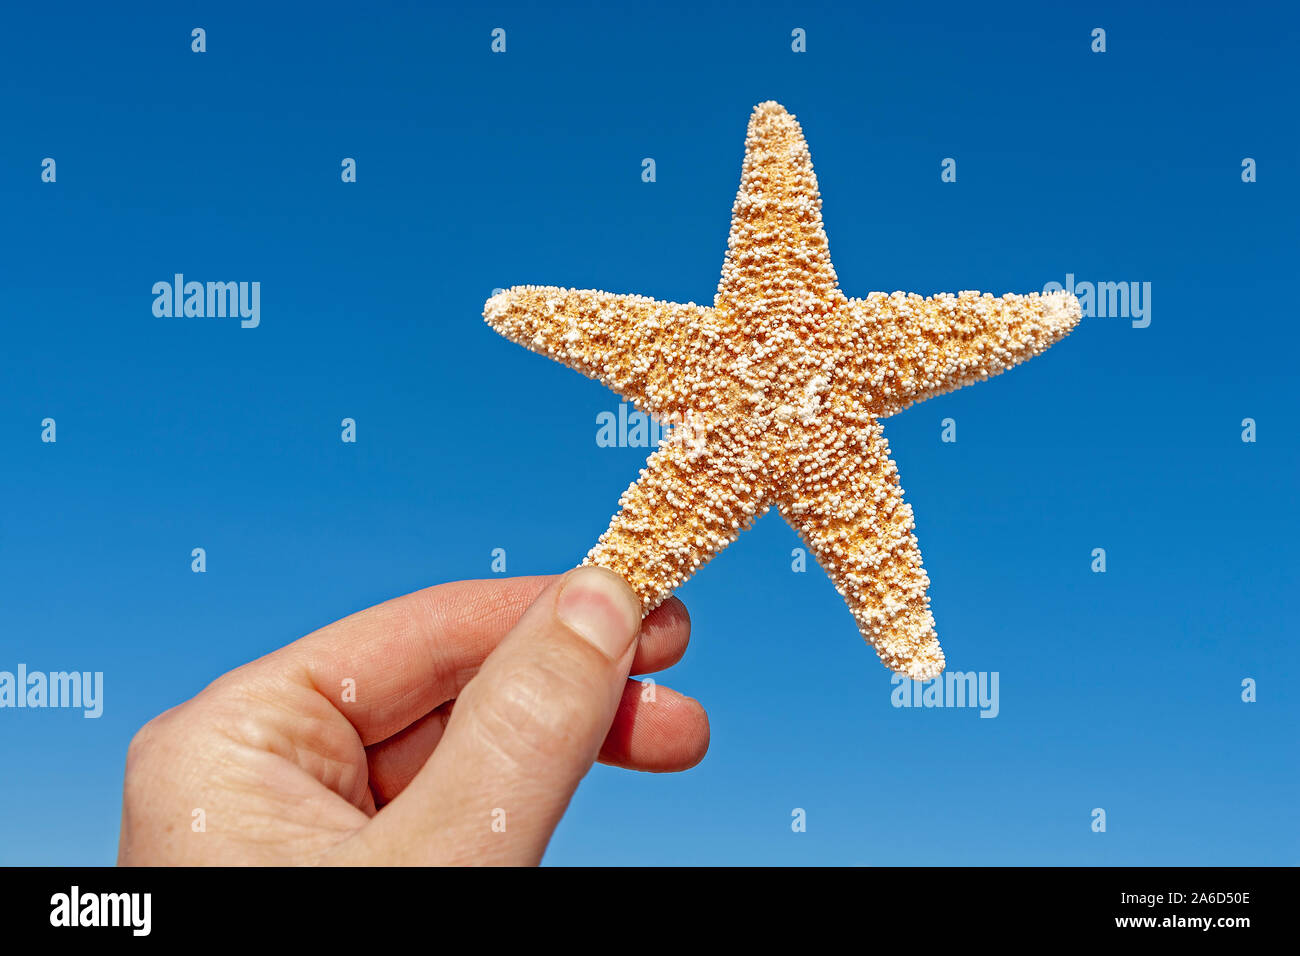 Una mano sosteniendo una estrella de mar secos. Foto de stock